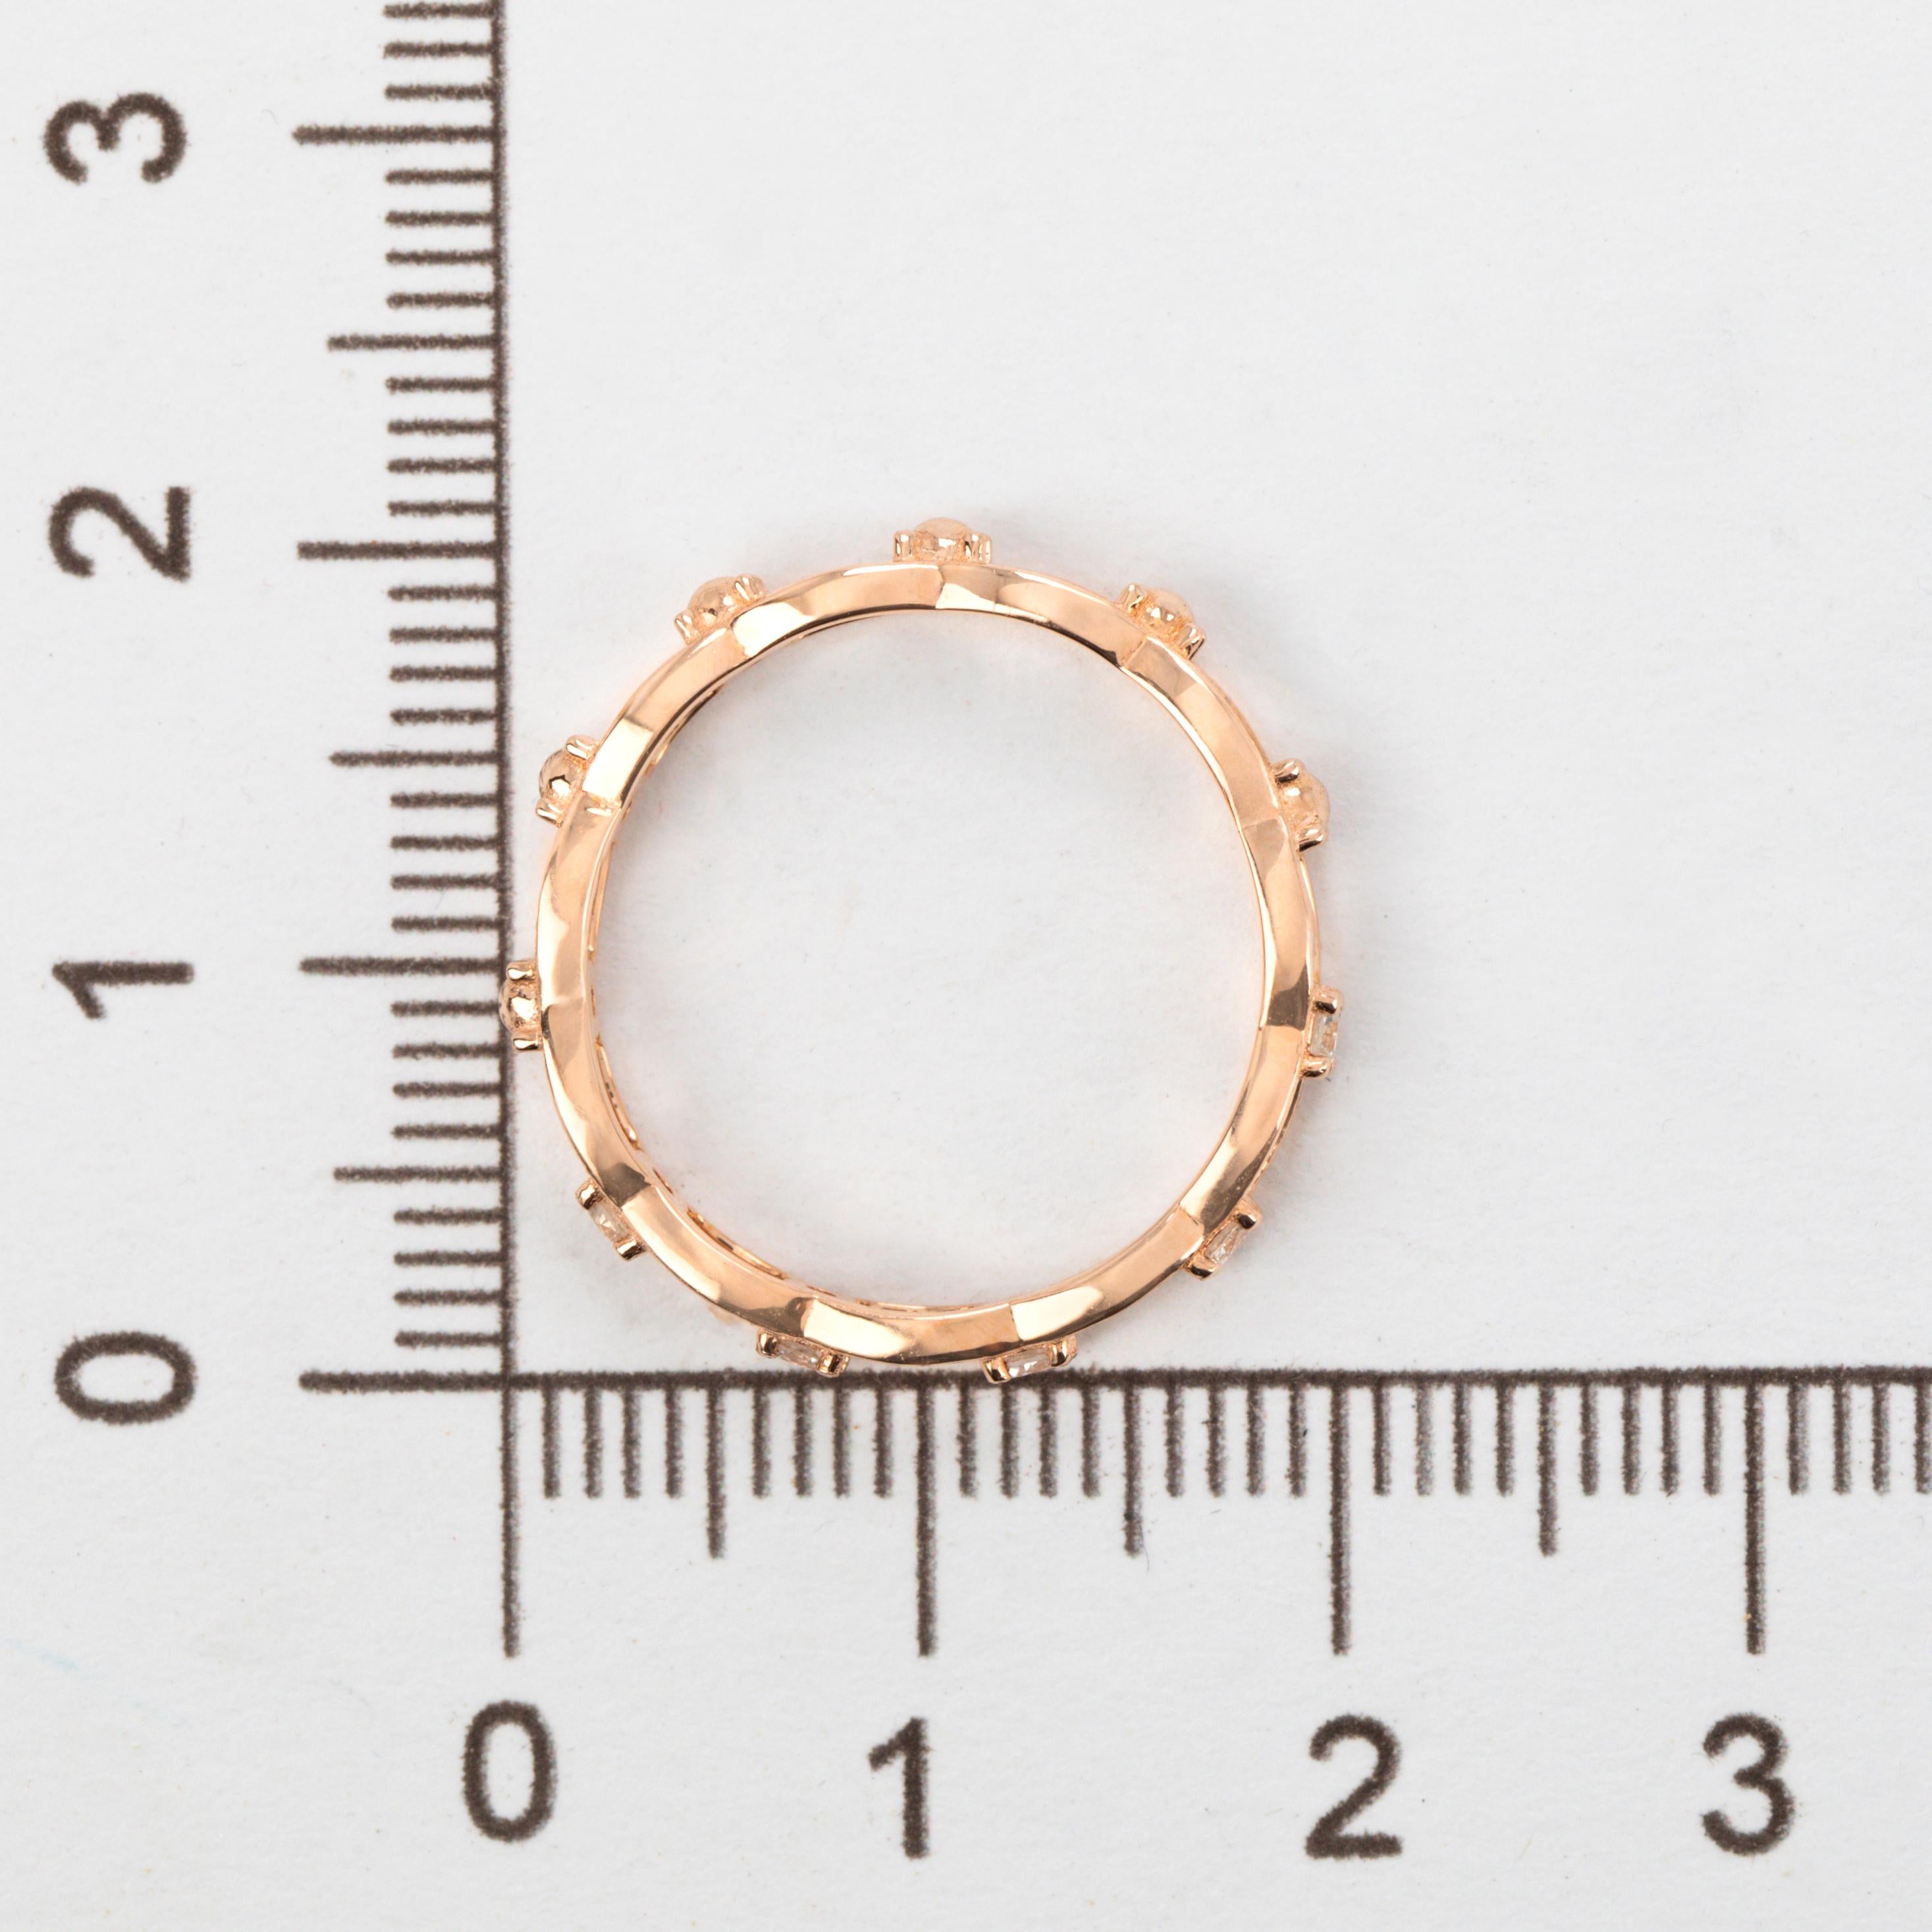 Women's or Men's 14k Rose Gold Rings, Vintage Model Rİngs, 0.14 ct Diamond Stone Rings For Sale